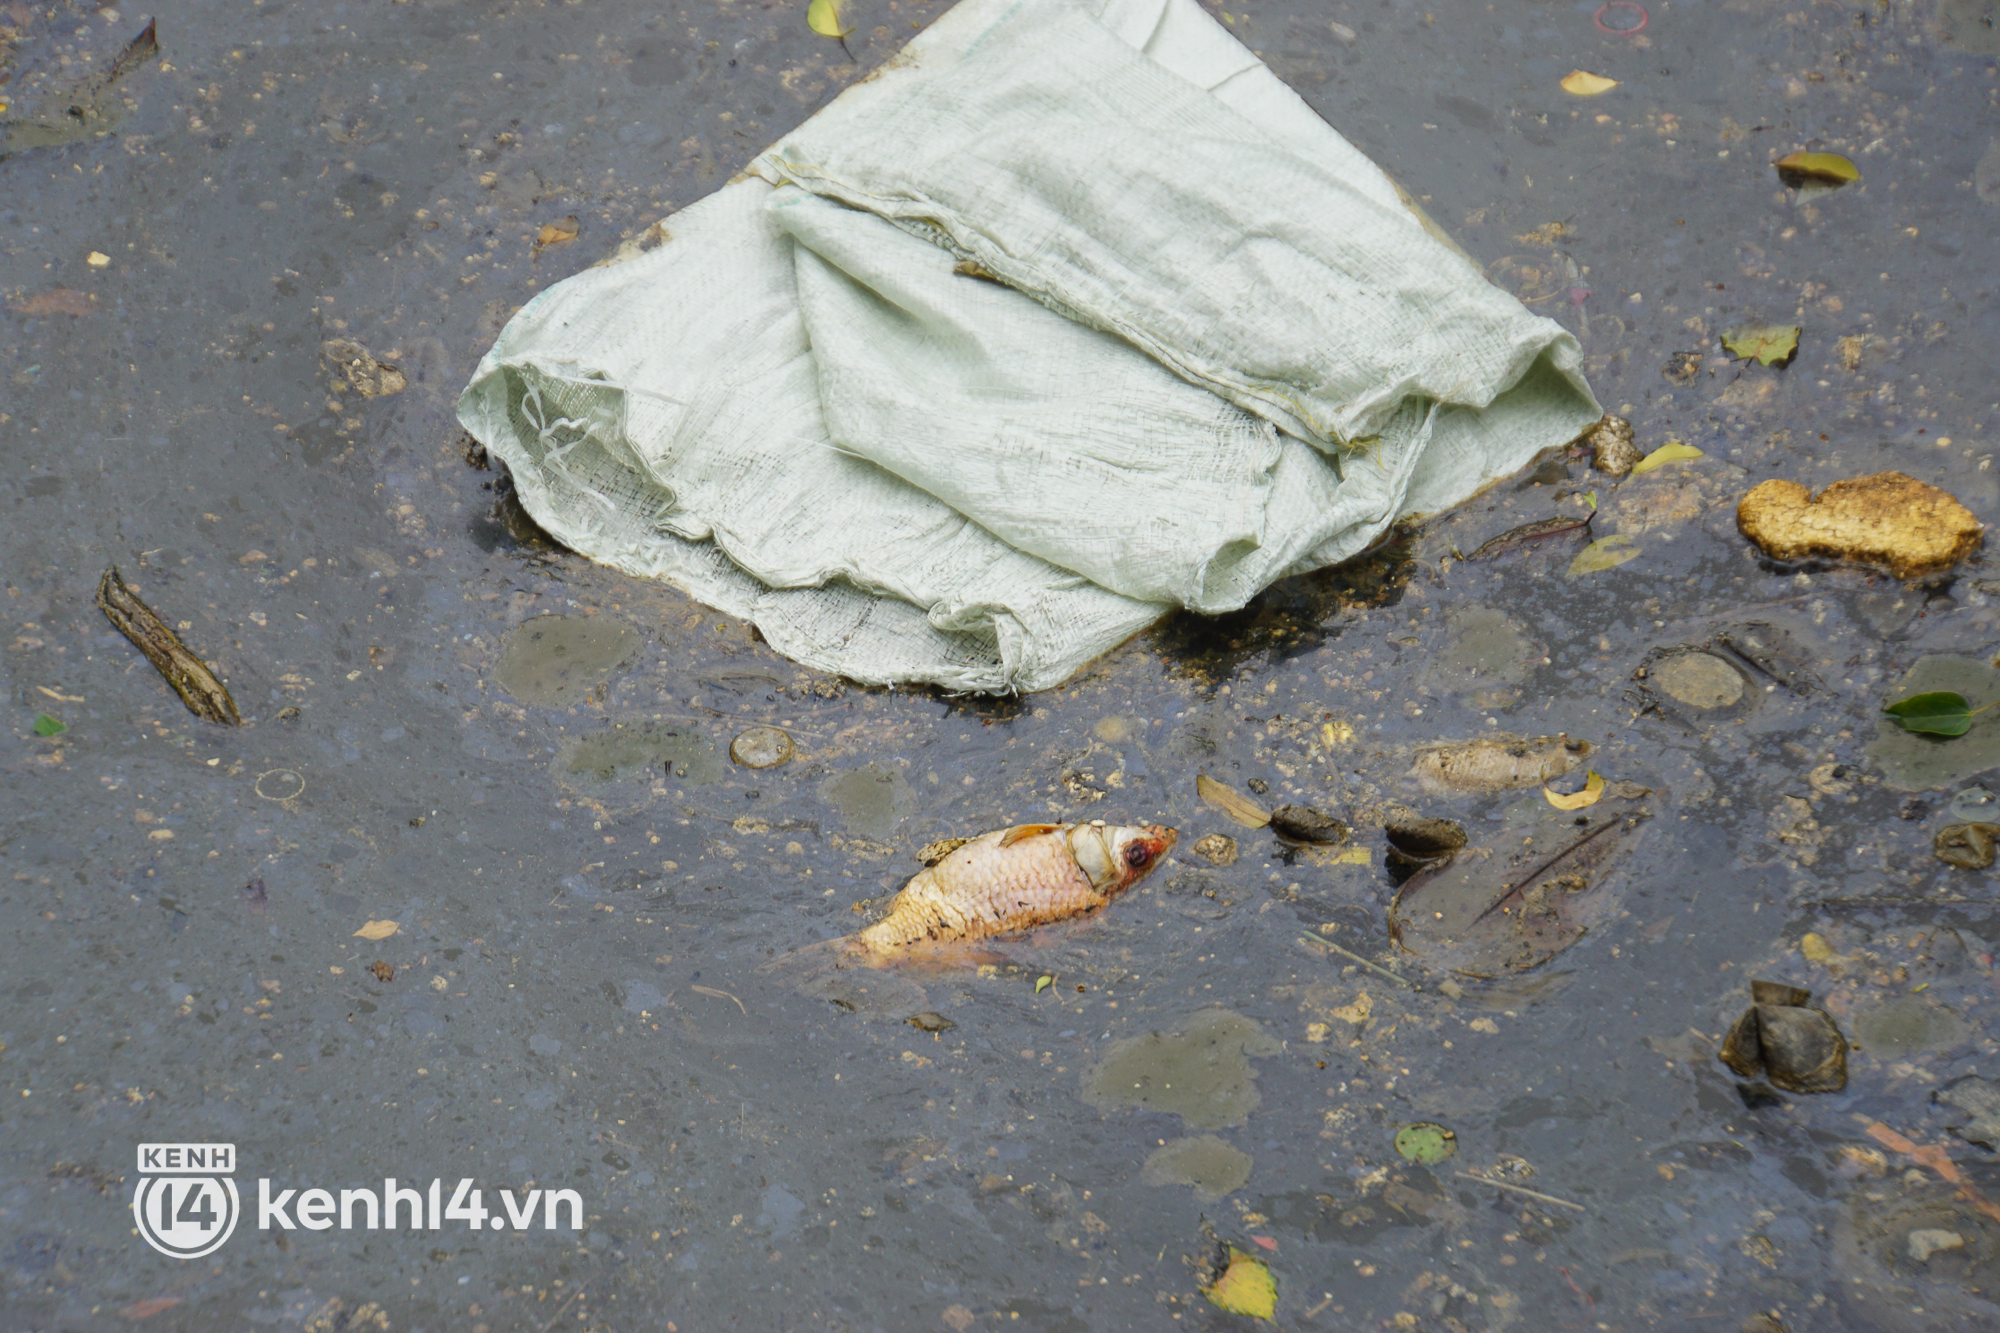 Cá chết lẫn trong rác thải nổi kín mặt kênh Nhiêu Lộc - Thị Nghè ở TP.HCM  - Ảnh 11.